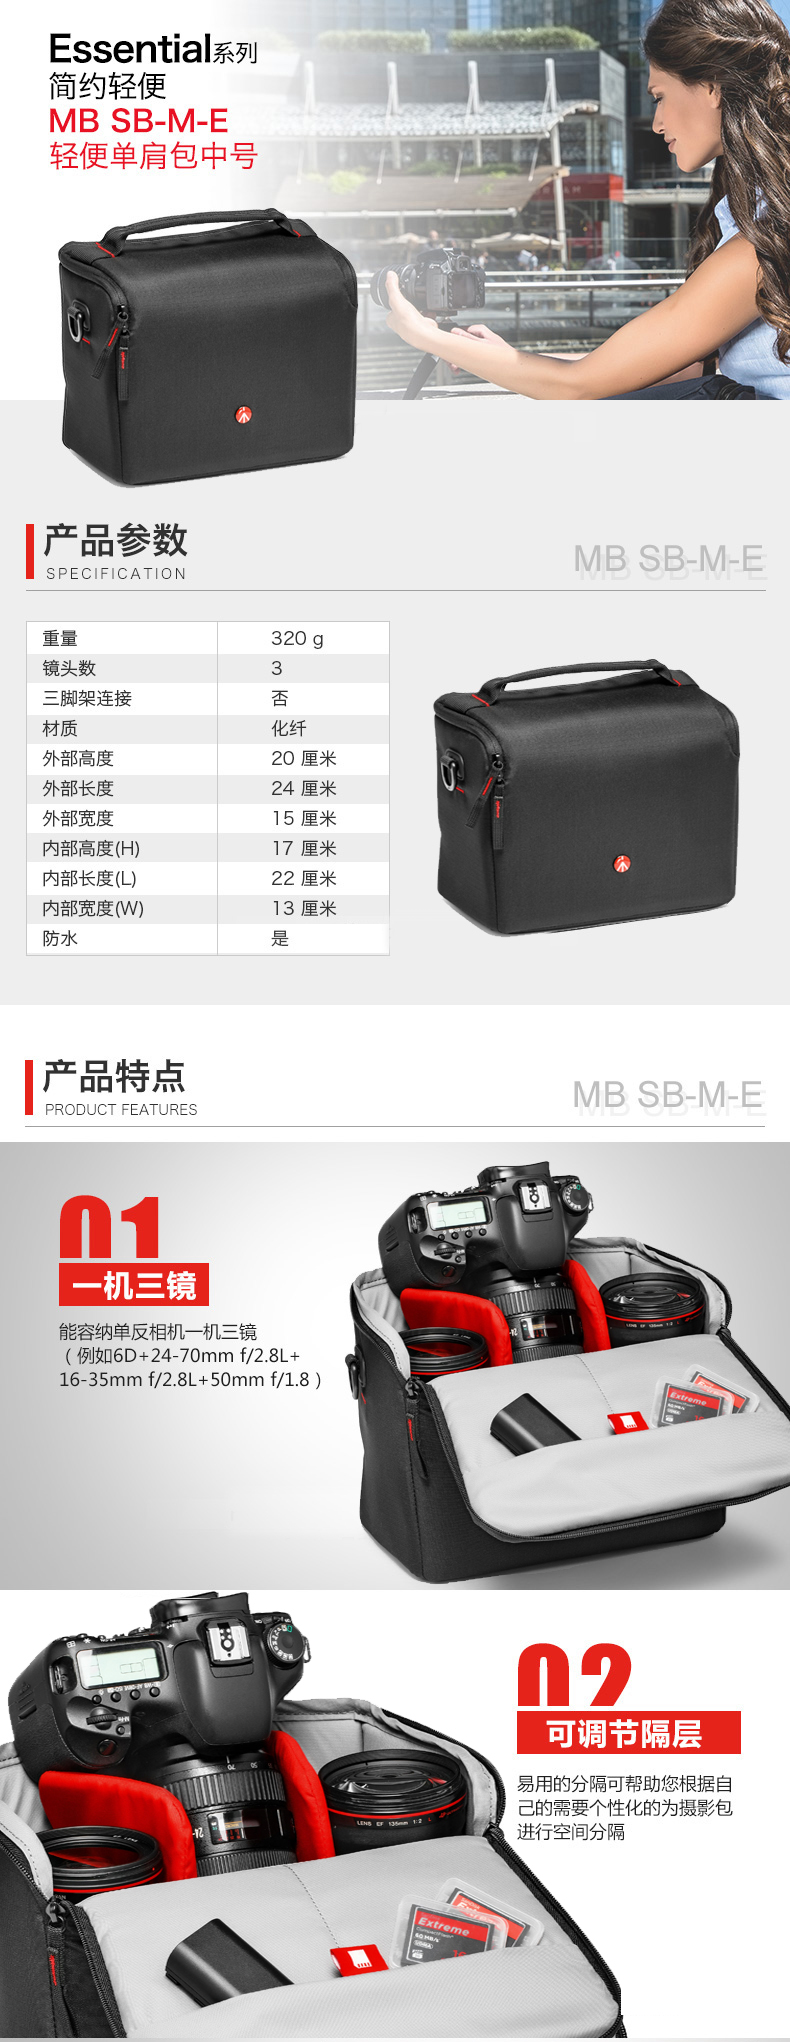 曼富图(MANFROTTO) MB SB-M-E 微单单反卡片机镜头相机包/单肩斜跨包/摄影包